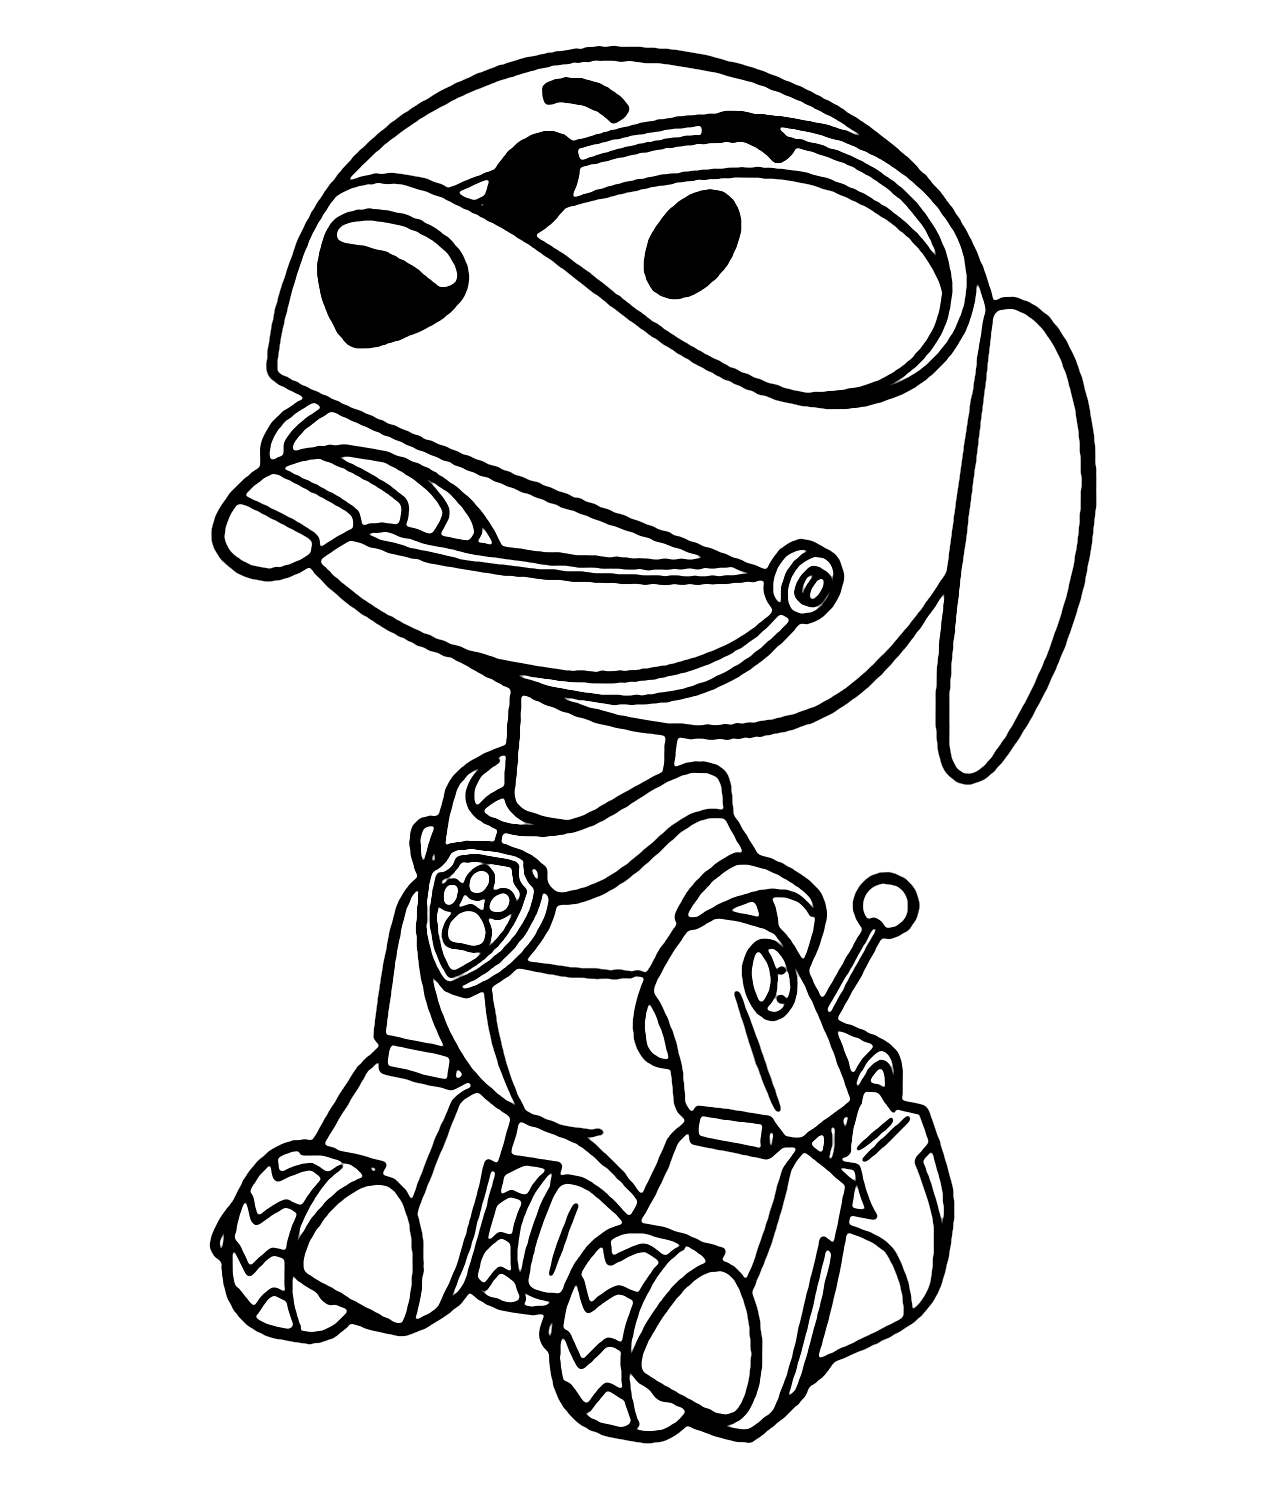 Patrulha Canina Robo Dog from Robo Dog Paw Patrol